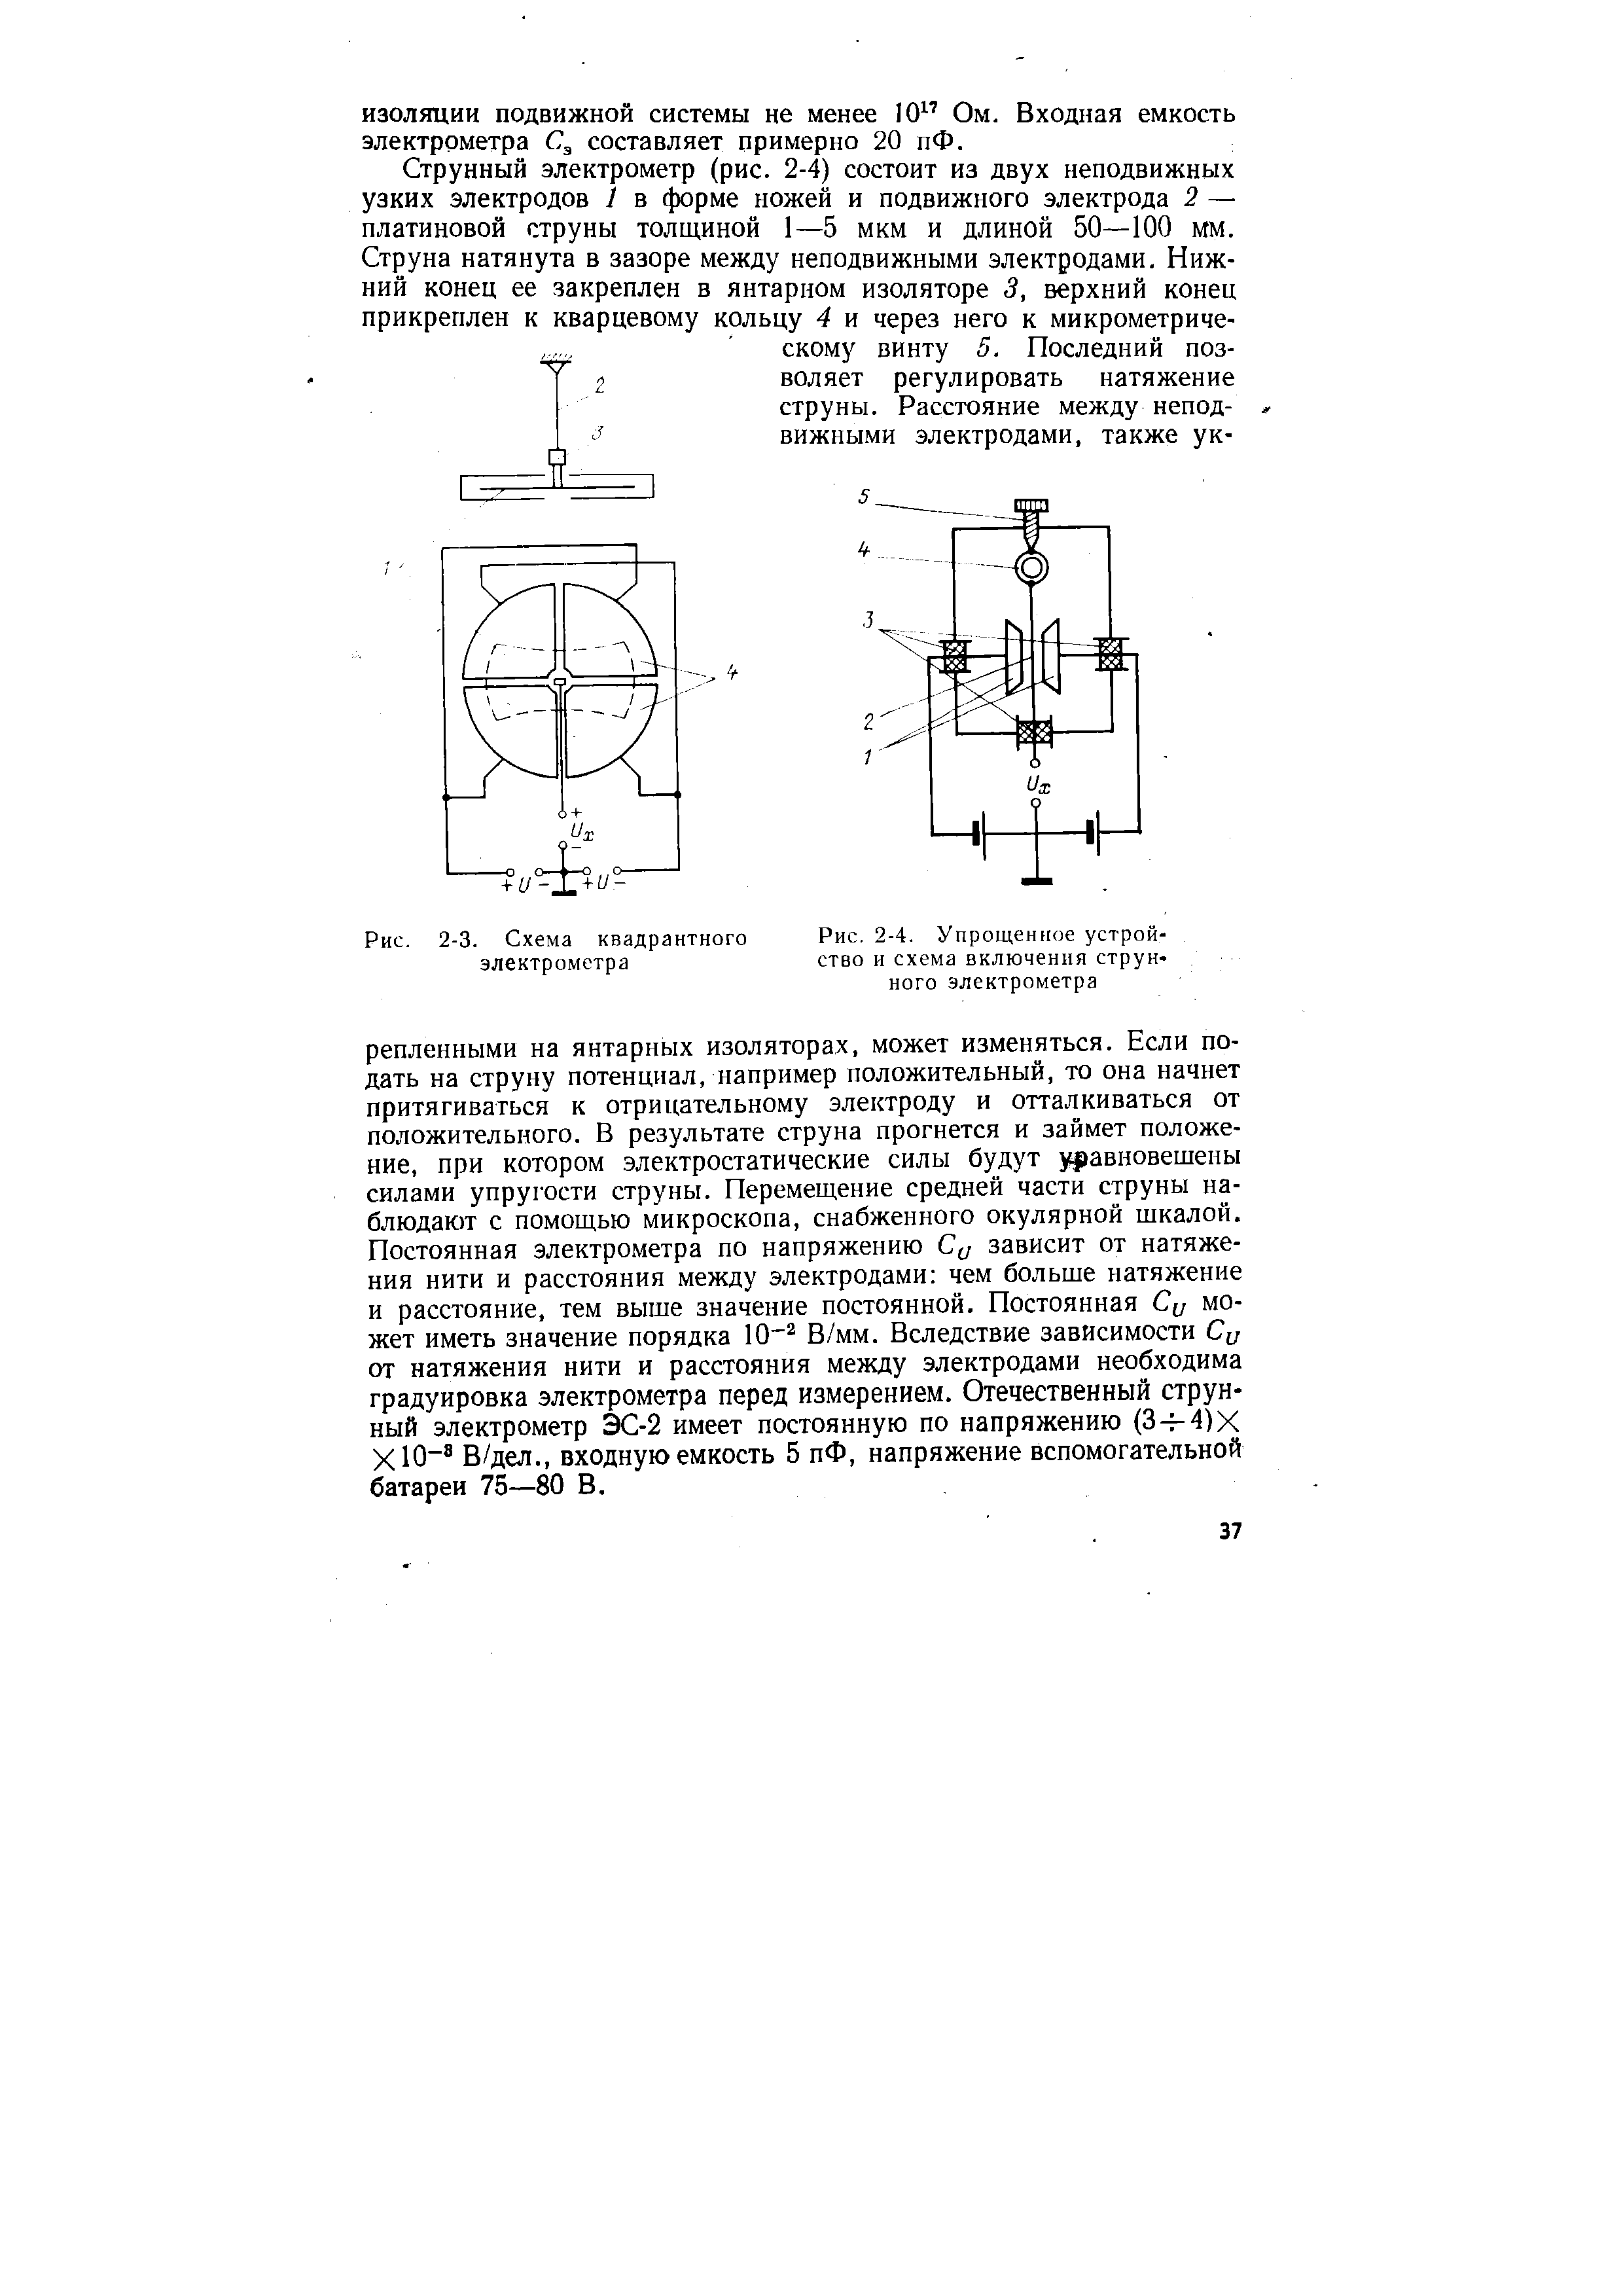 Рис. 2-4. Упрощенное устройство и схема включения струнного электрометра
